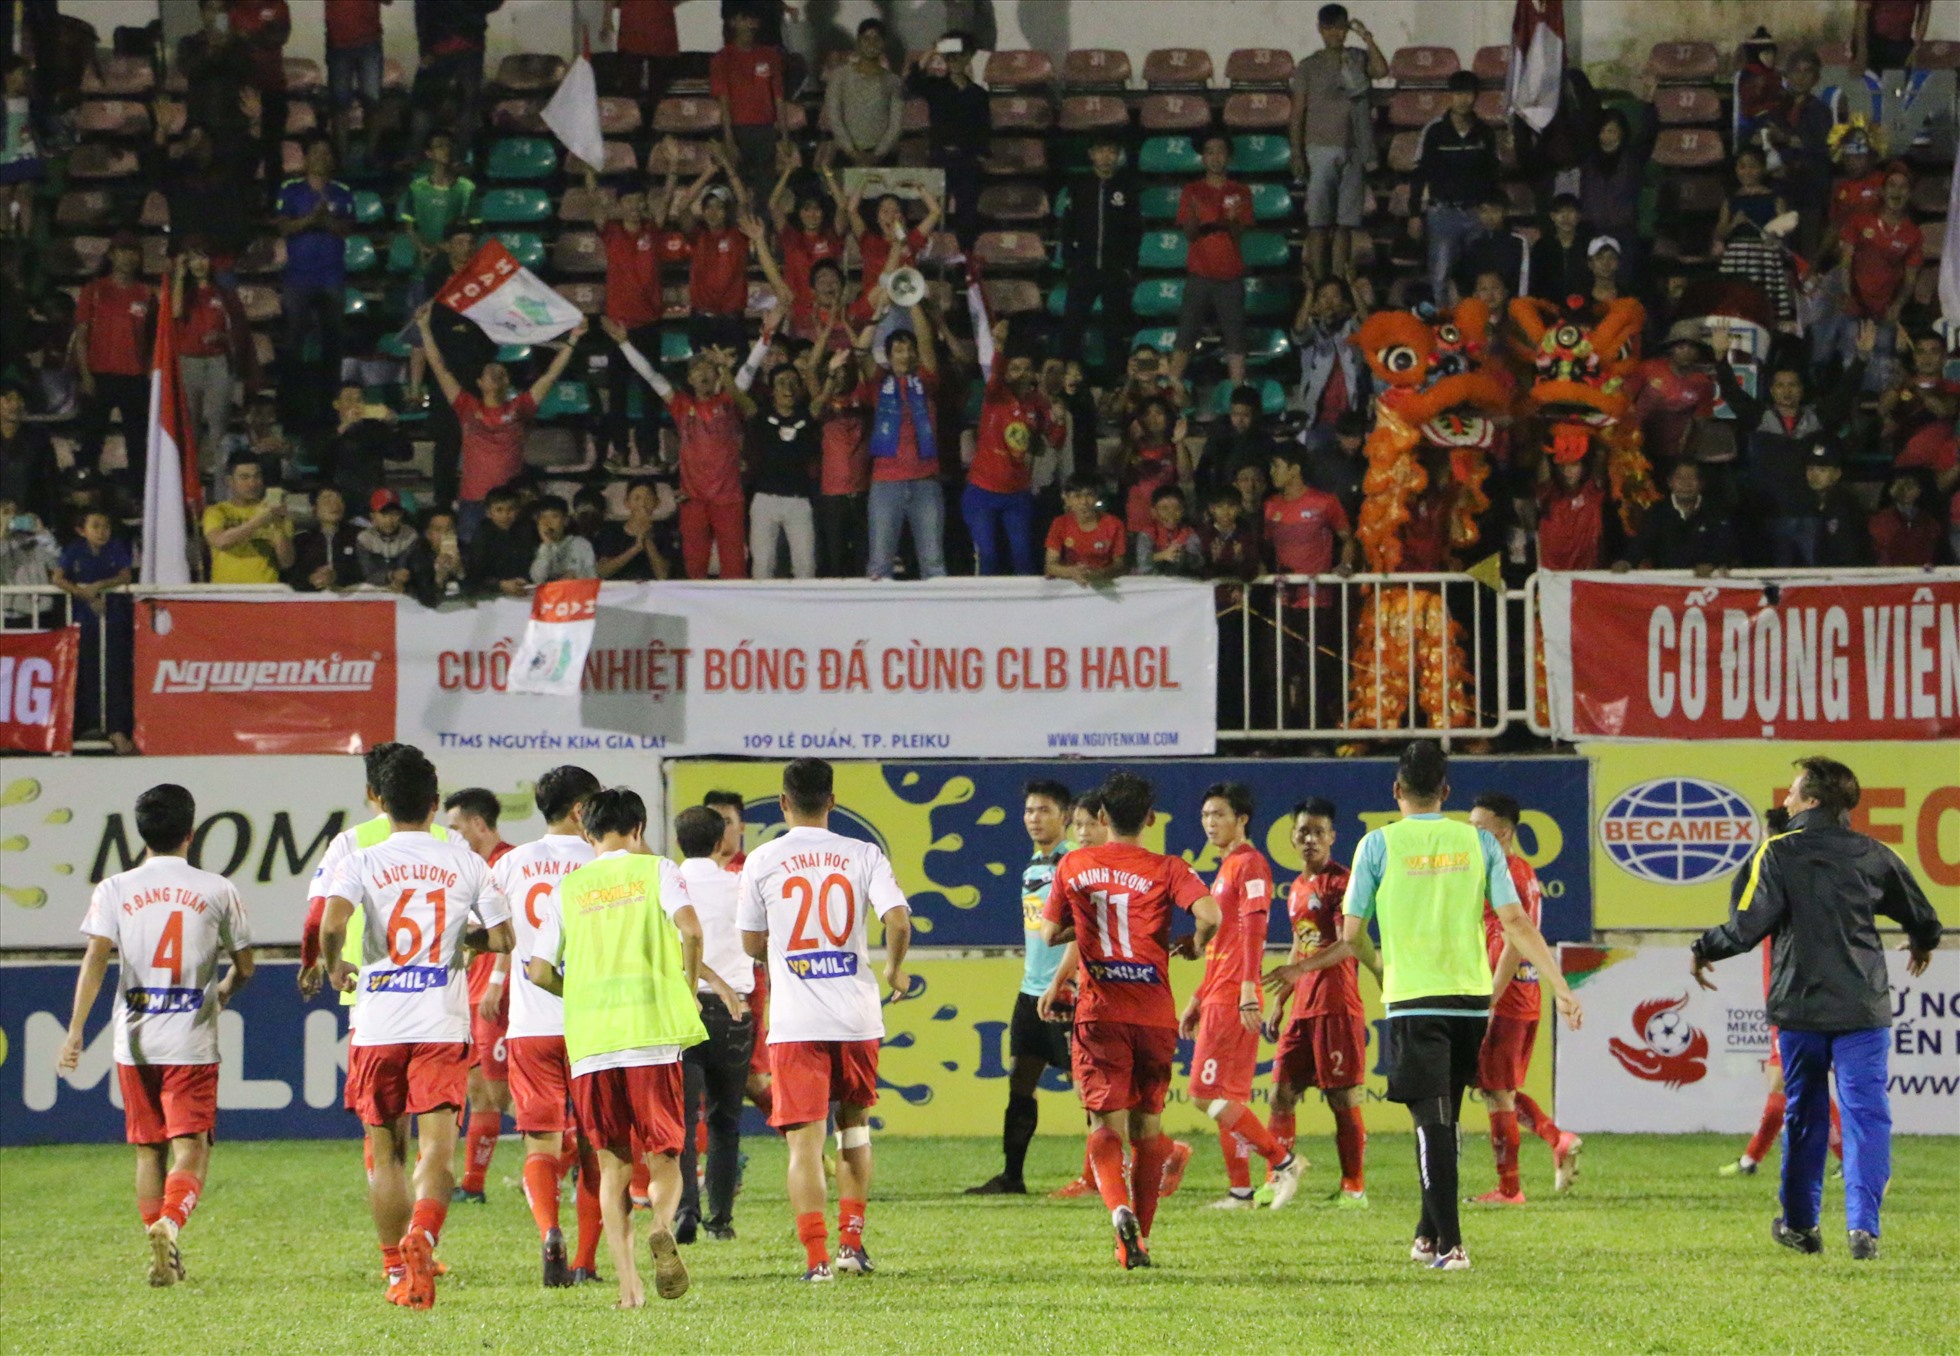 Câu lạc bộ Hoàng Anh Gia Lai từng là đội bóng được yêu thích nhất tại Việt Nam, nhưng thời điểm hiện tại họ nhận về không ít chỉ trích từ người hâm mộ. Ảnh: Đ.T